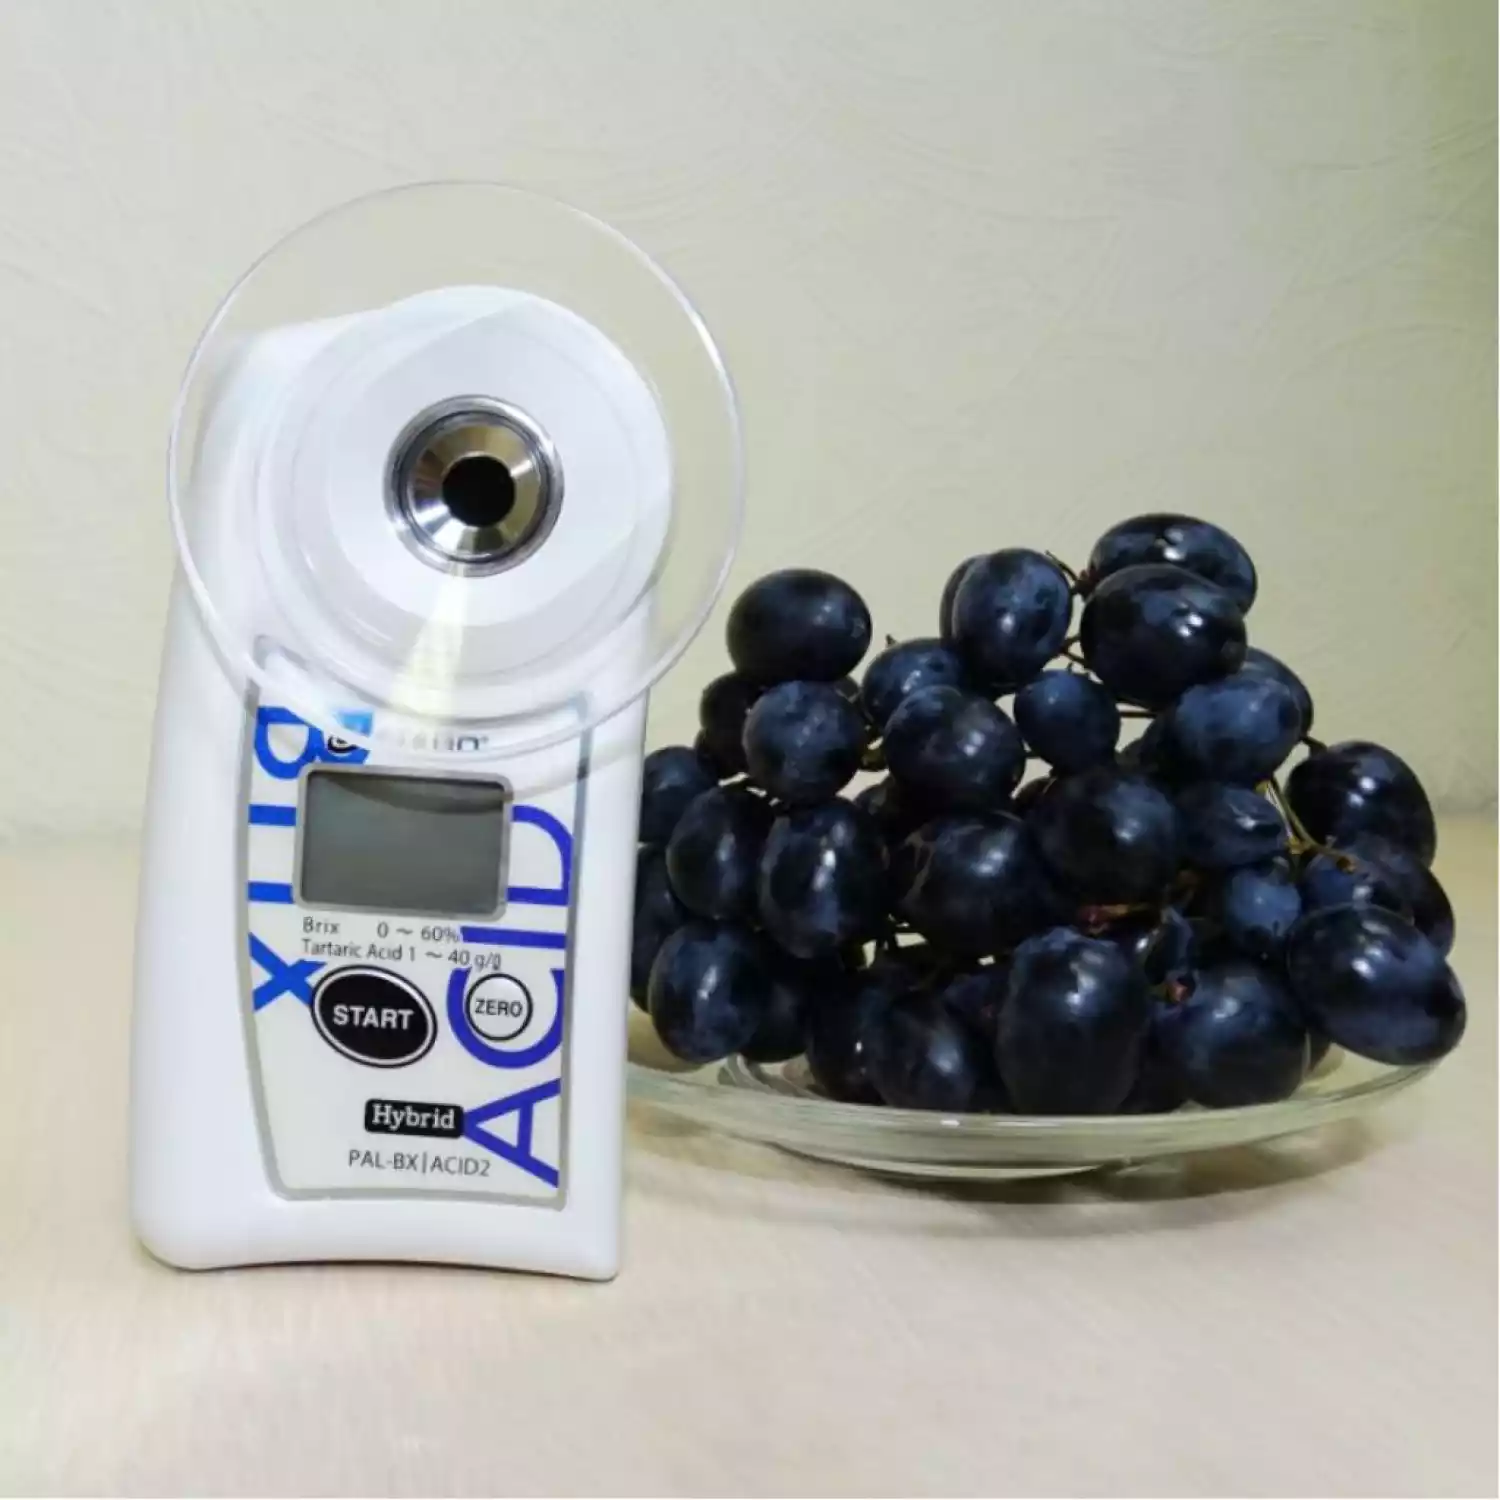 PAL-Easy ACID 2 Master Kit измеритель винной кислоты - 1